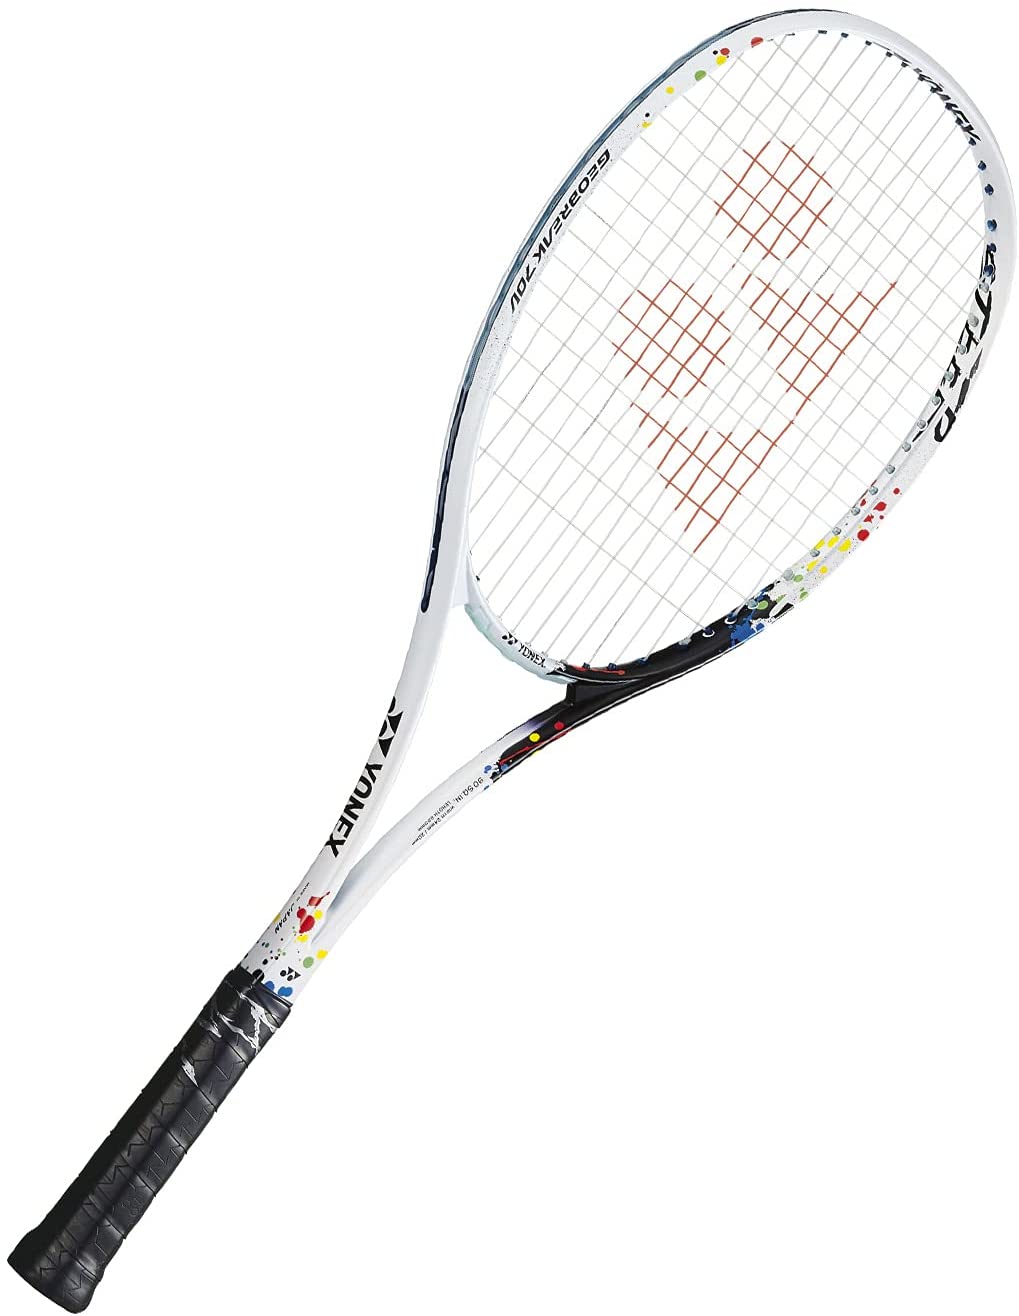 魅力的なテニスジオブレイク70Vステアの特徴と向いている人【ソフトテニスラケット